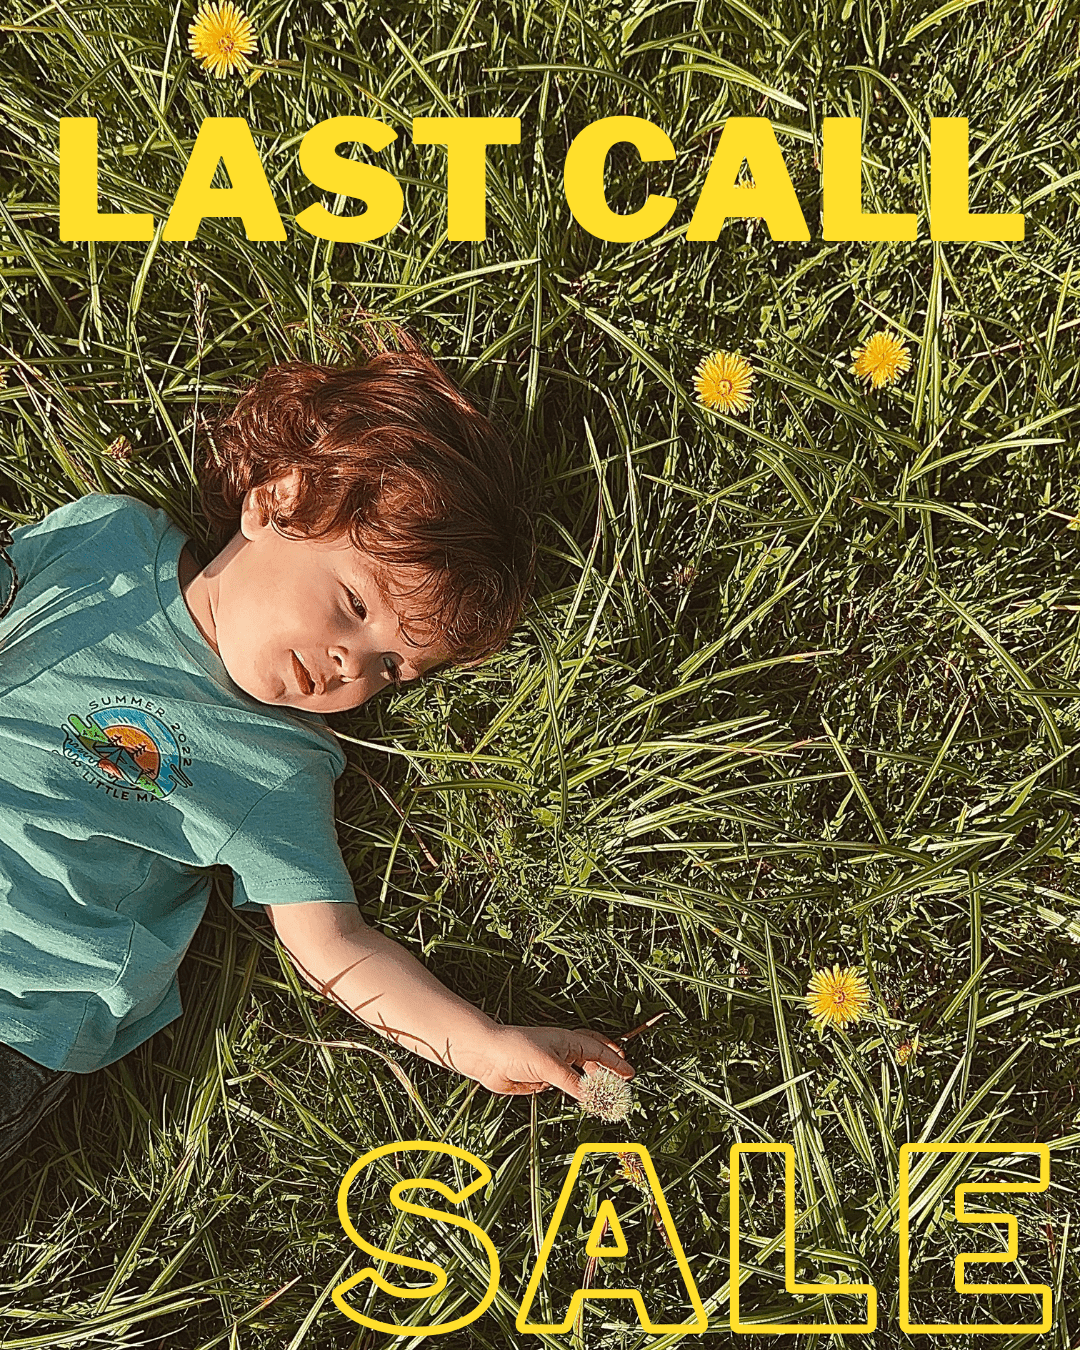 LAST CALL SALE